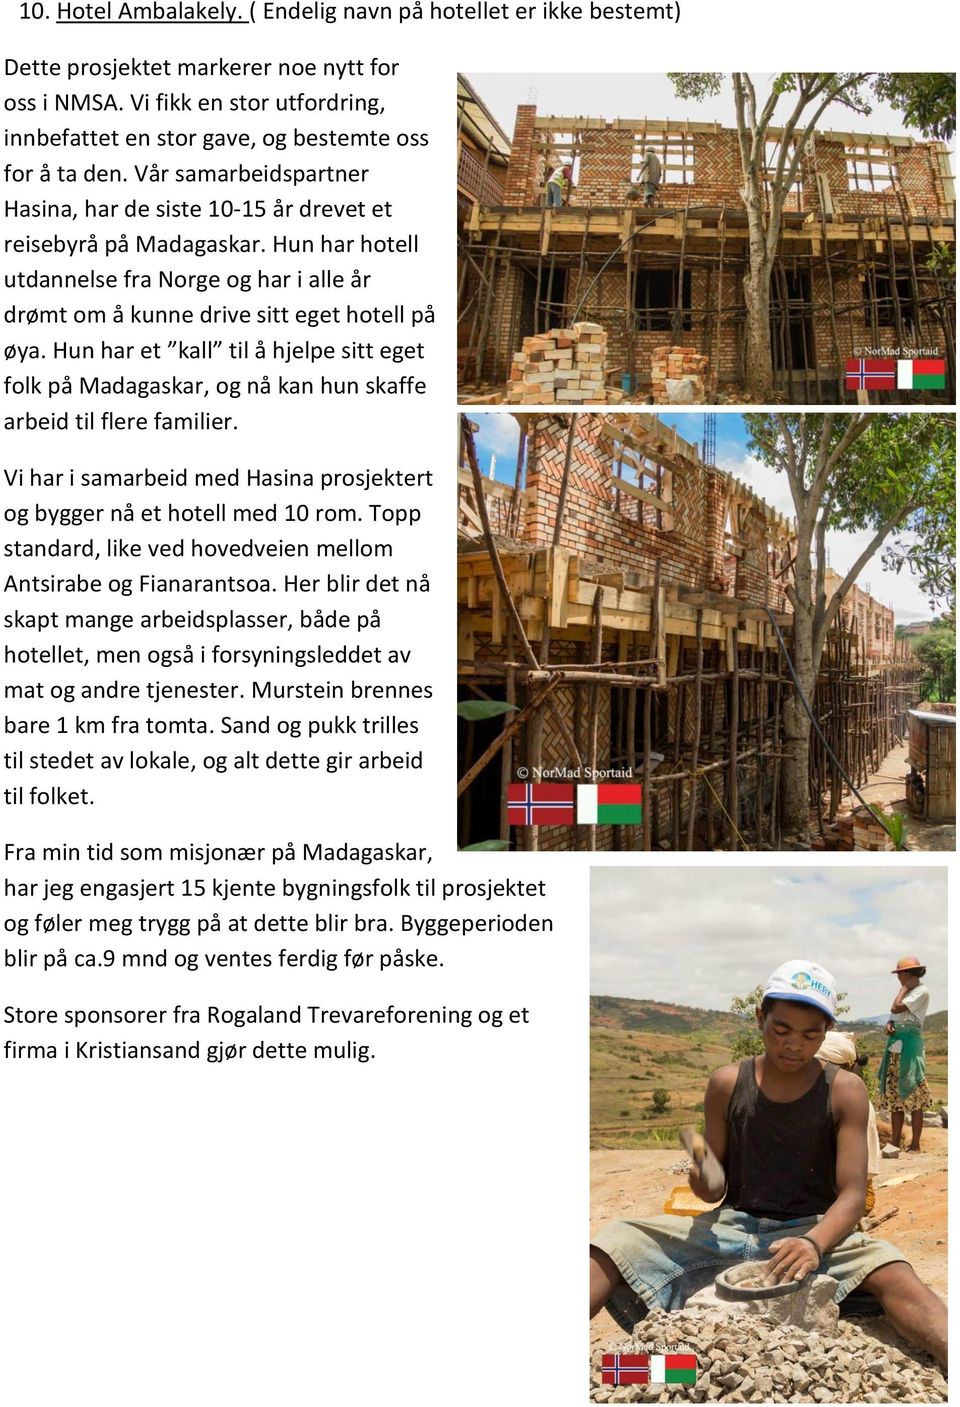 Hun har et kall til å hjelpe sitt eget folk på Madagaskar, og nå kan hun skaffe arbeid til flere familier. Vi har i samarbeid med Hasina prosjektert og bygger nå et hotell med 10 rom.